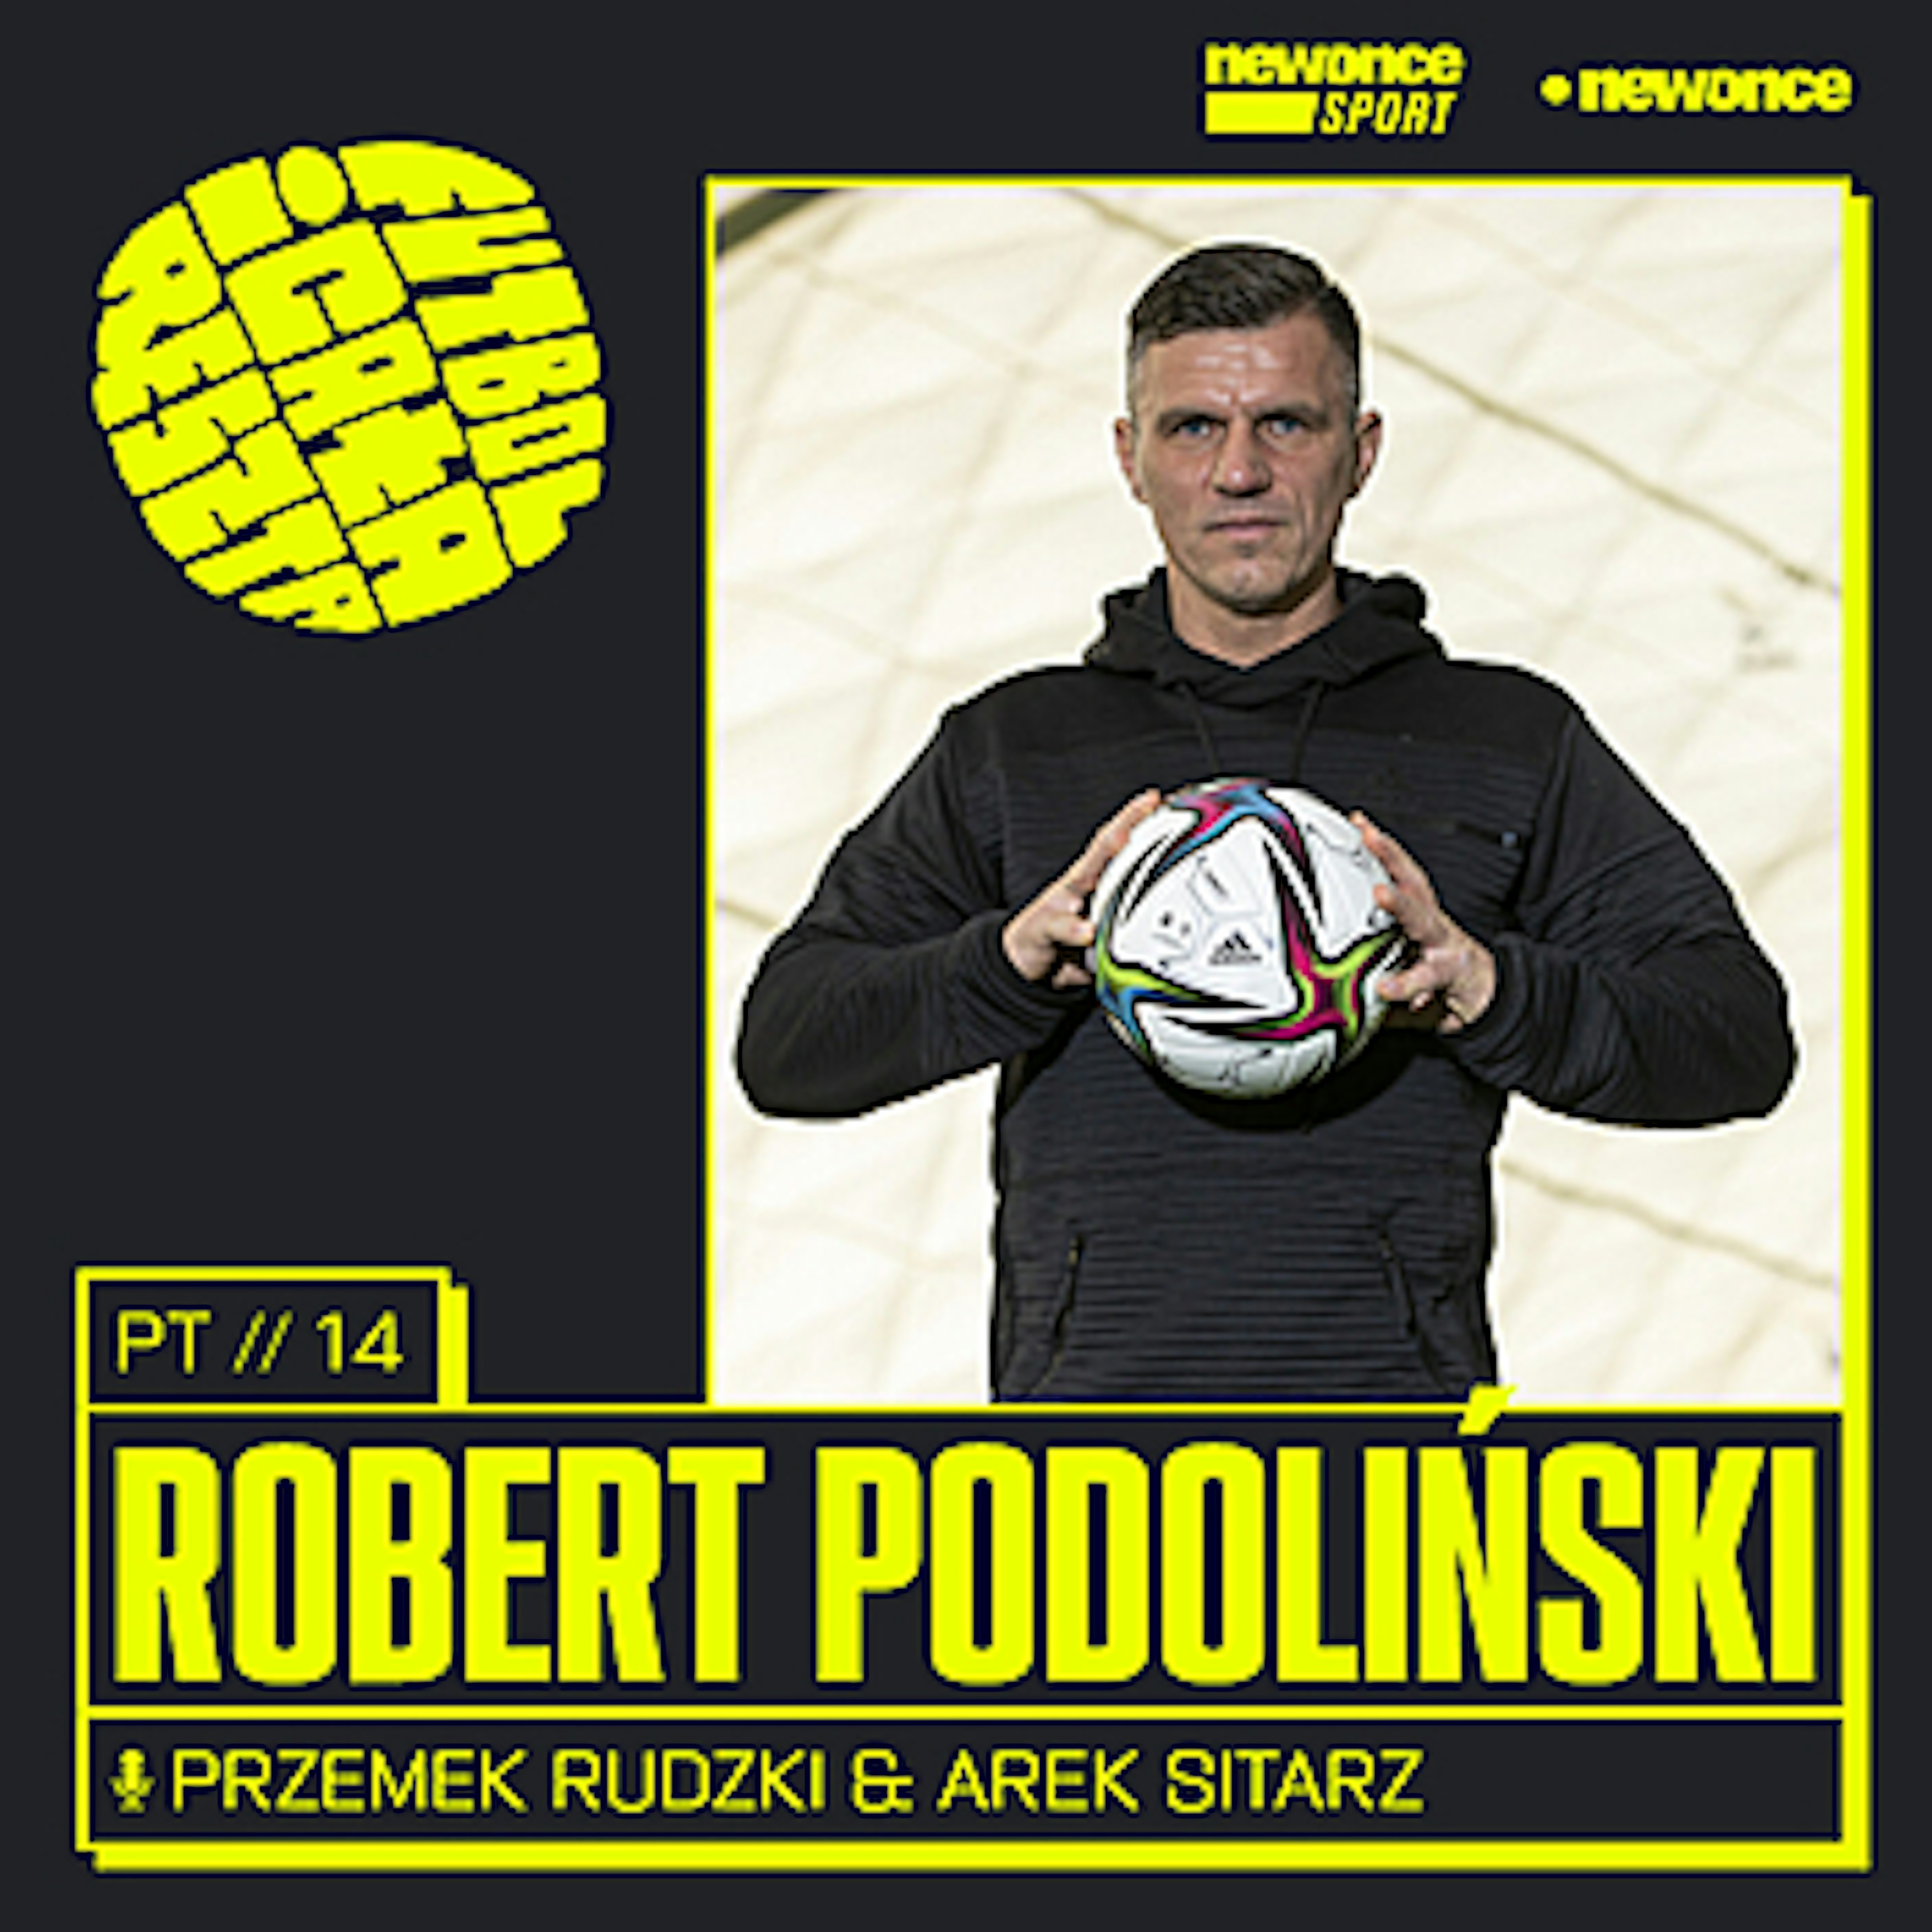 Futbol i cała reszta - Robert Podoliński. Łyżeczka z Sheffield